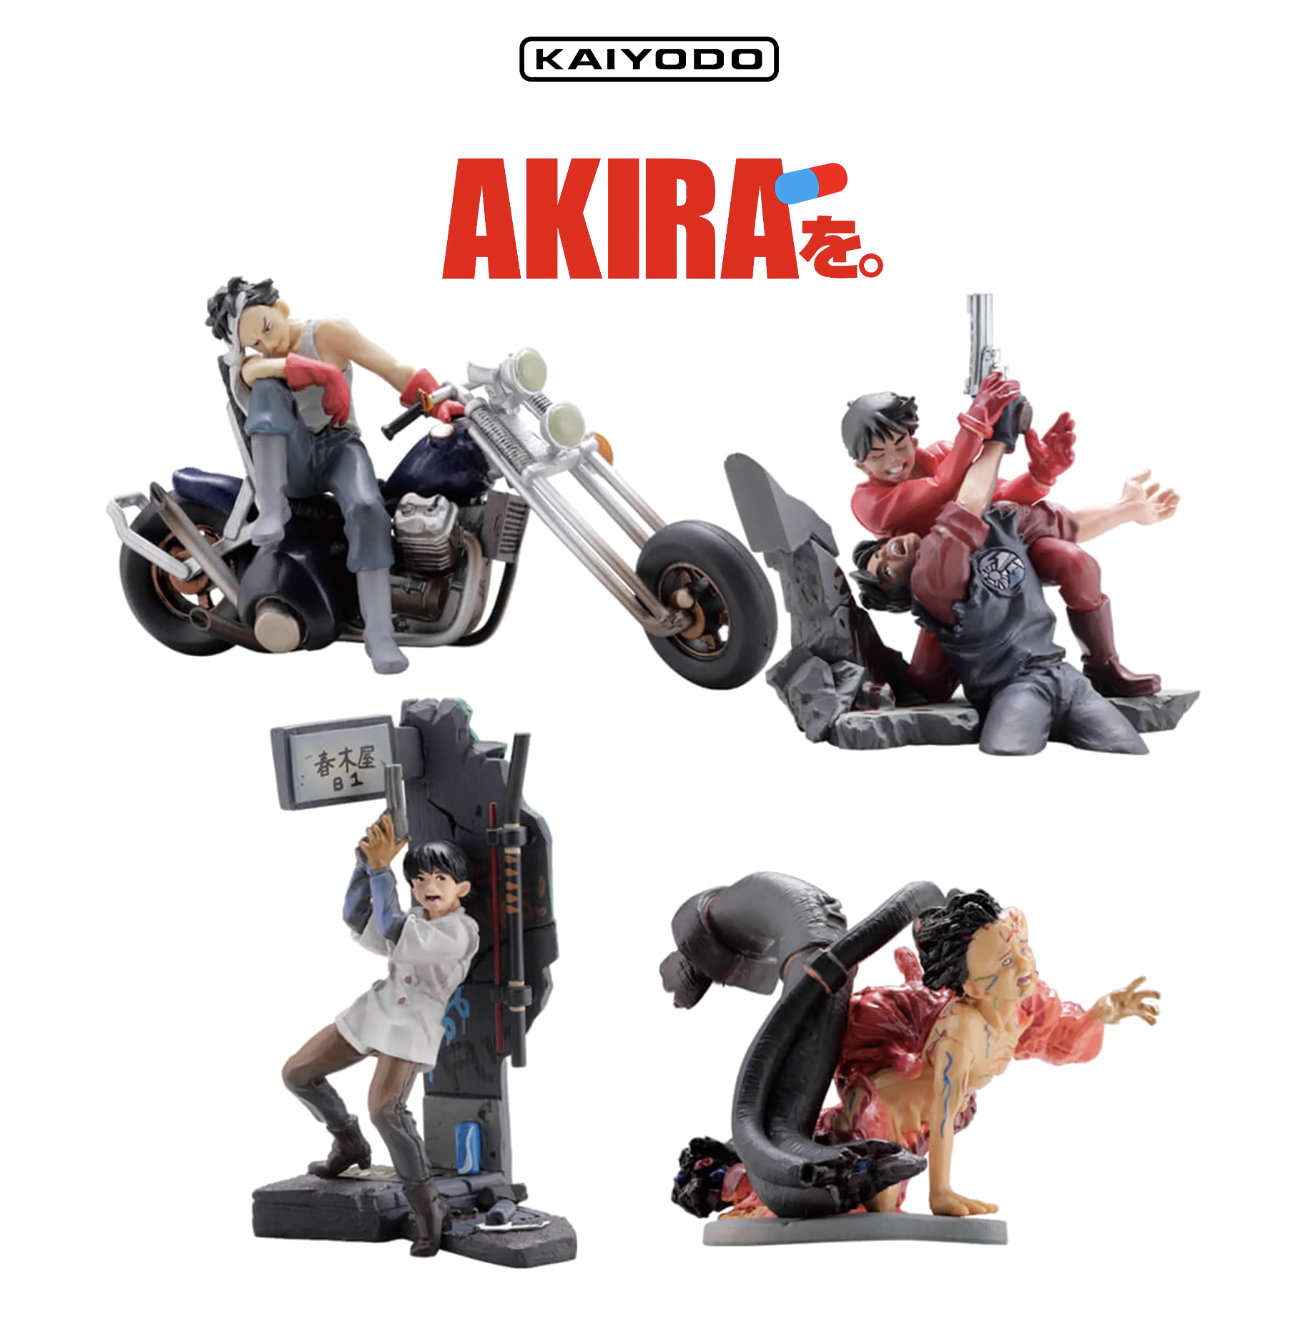 Akira 阿基拉x 海洋堂miniQ 系列模型玩偶盲盒・海肯商行